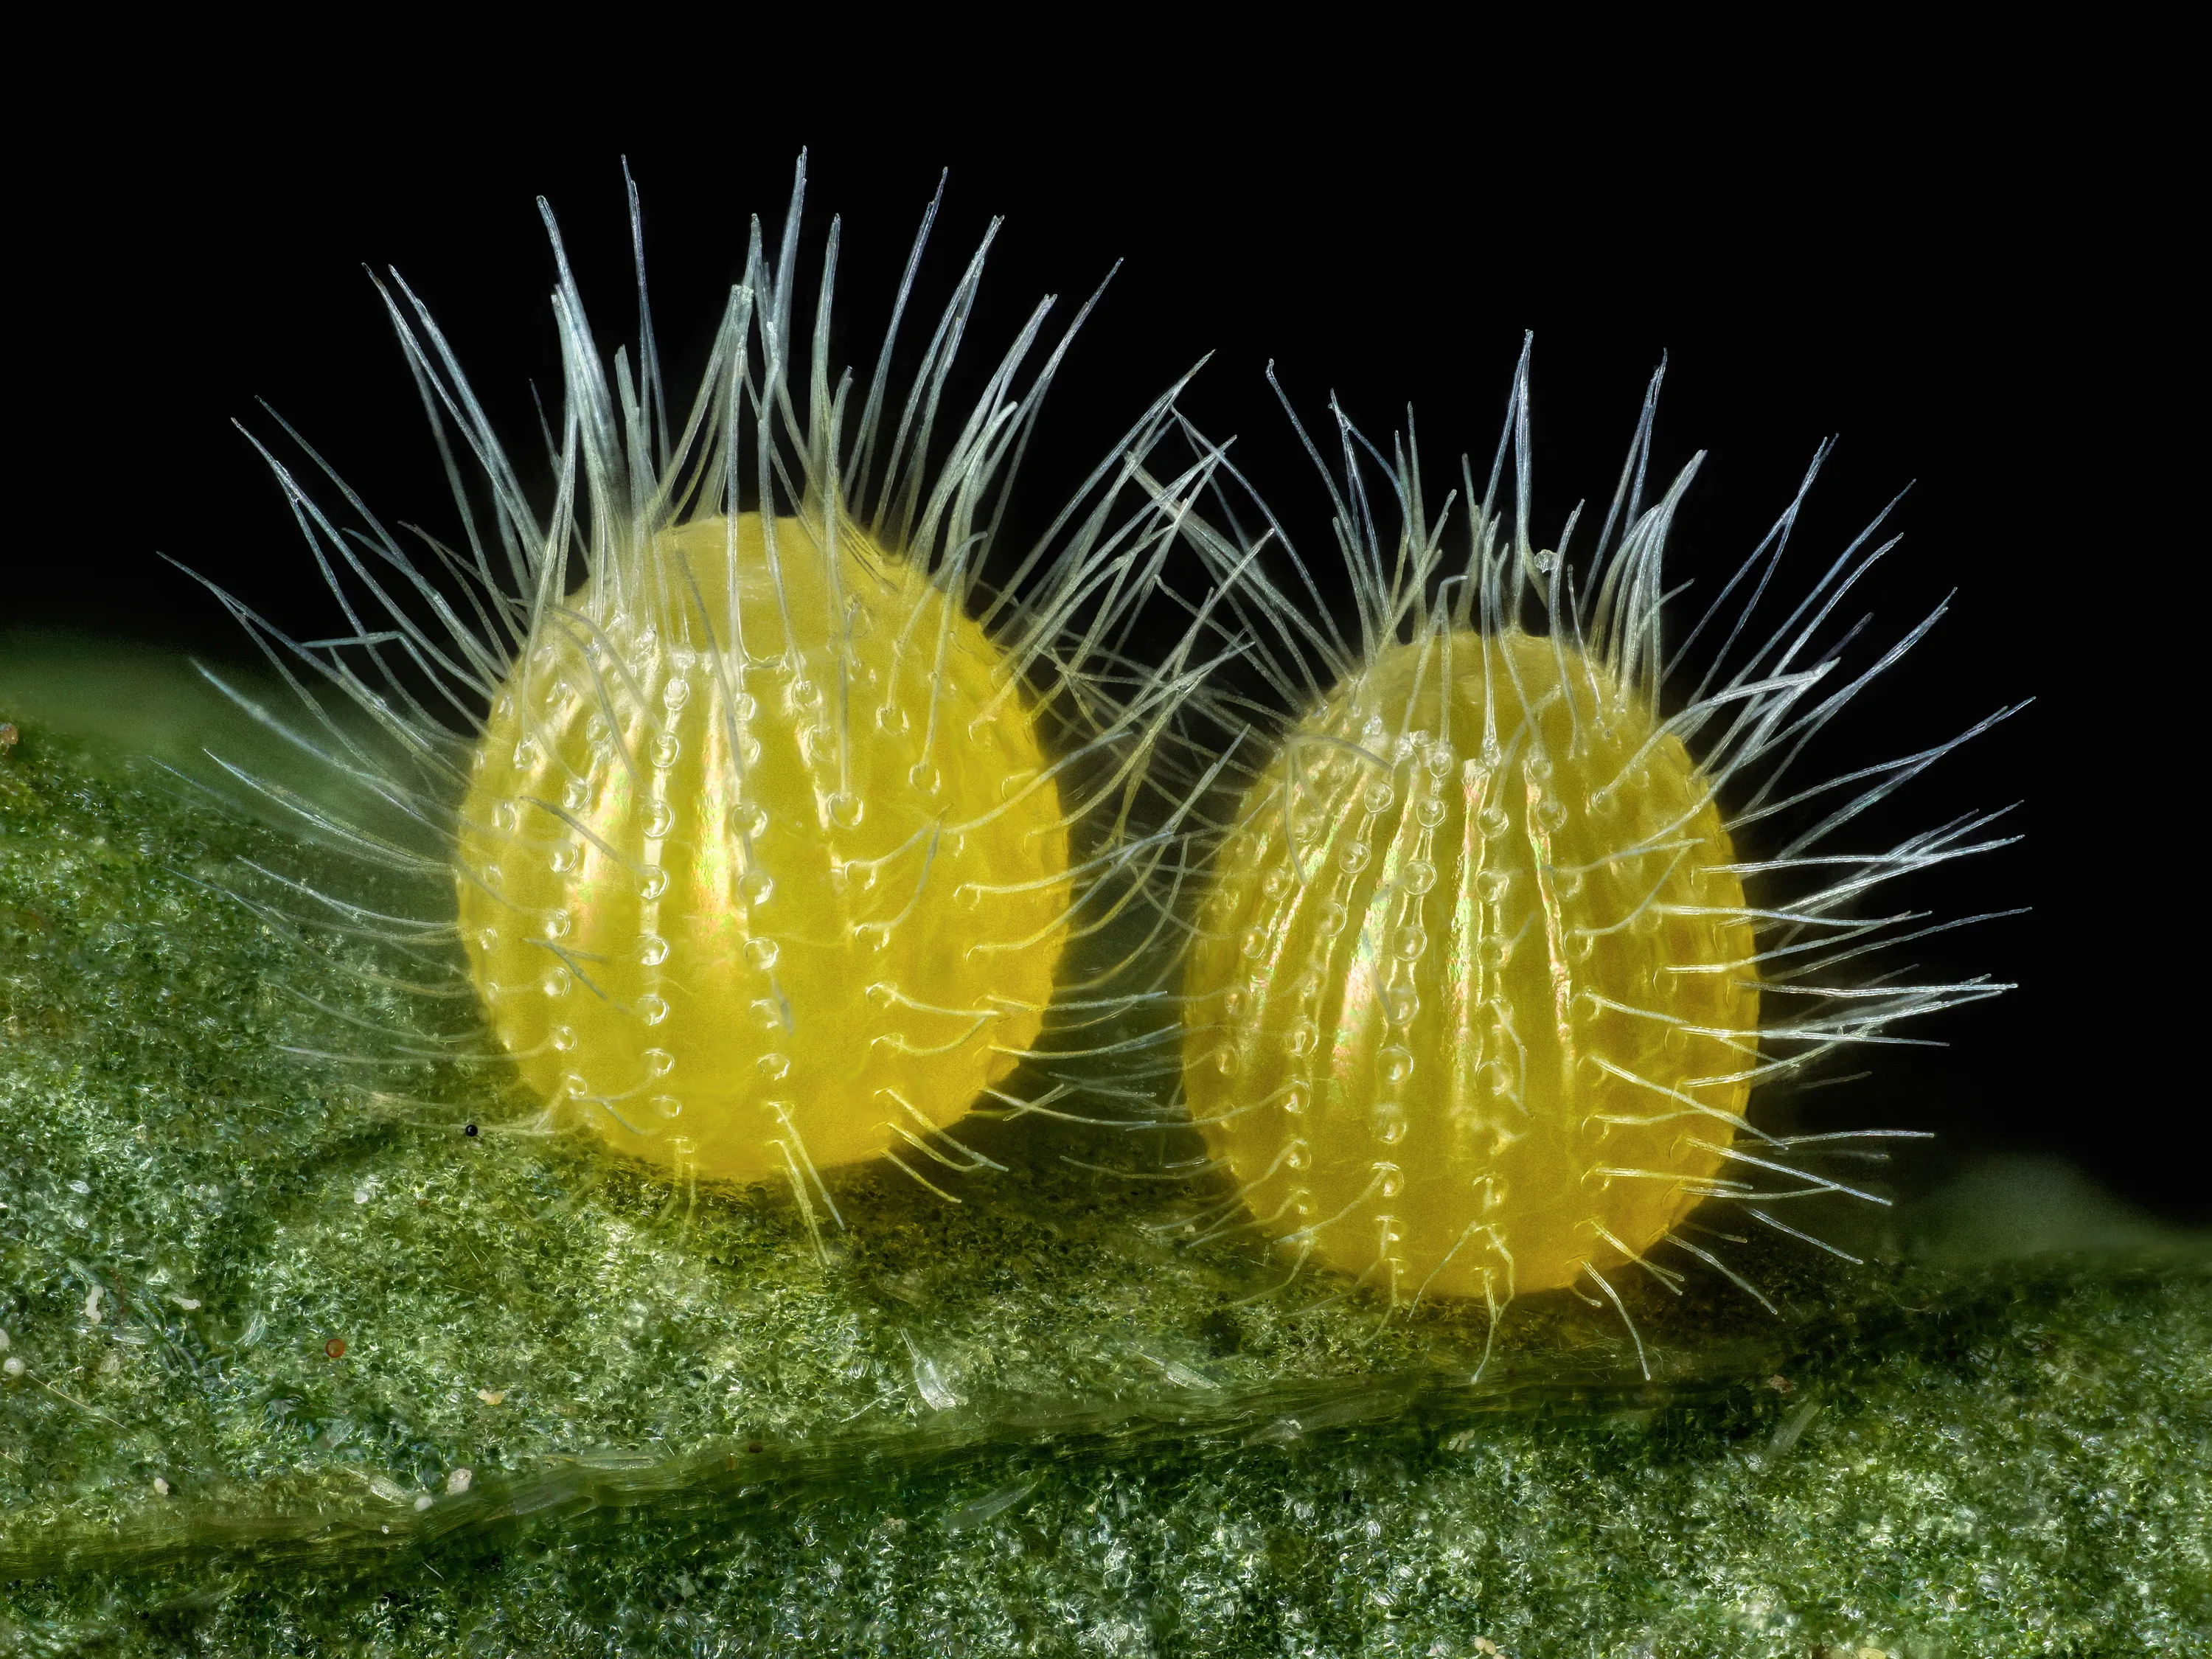 Яйцо гусеницы бабочка. Микрофотографии Nikon small World 2017. Яйца бабочек под микроскопом. Яйца насекомых. Яйца гусеницы.